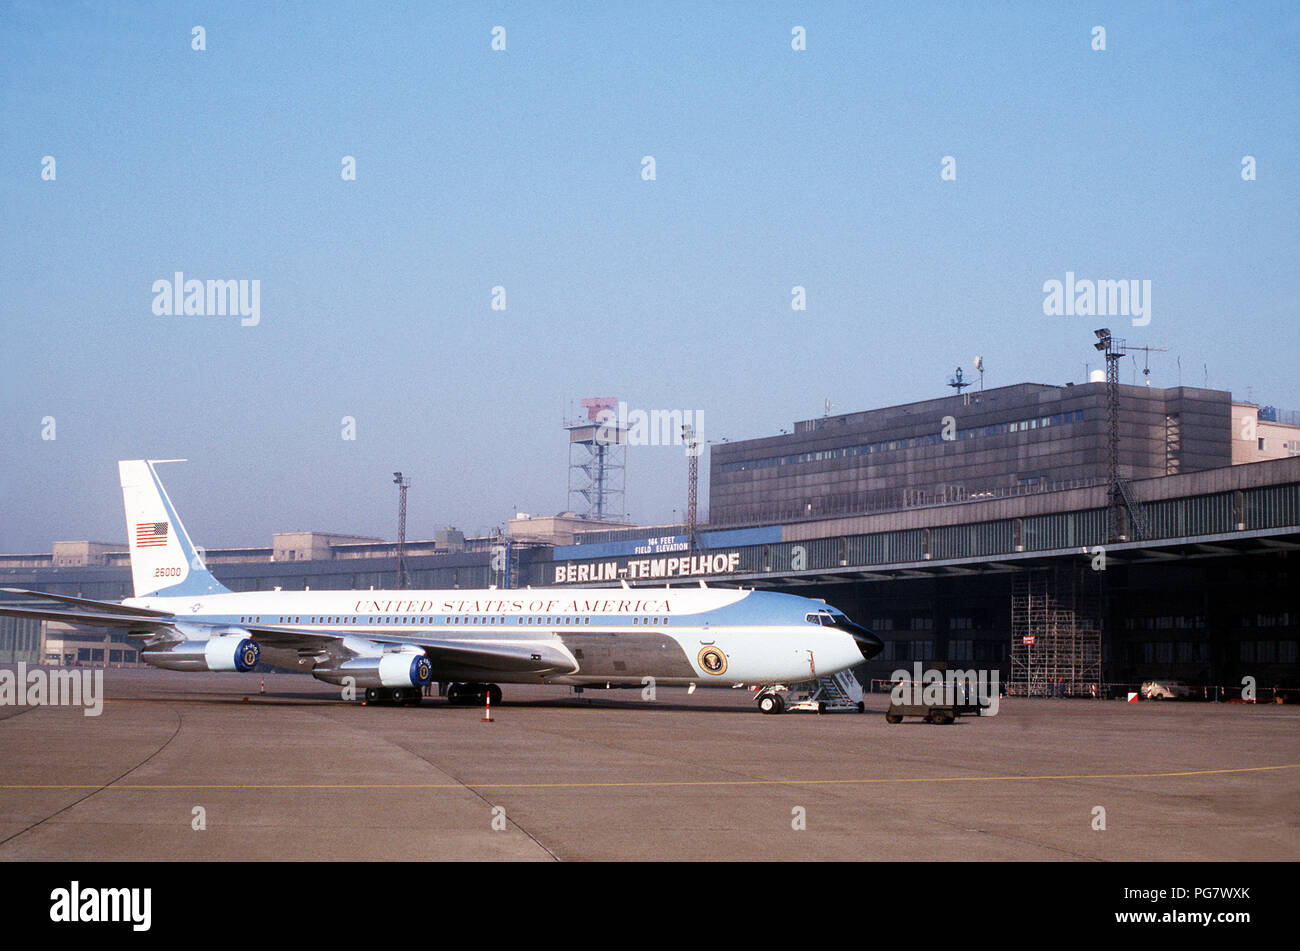 Air Force One, das VC-137 C Stratoliner Flugzeugen verwendet werden, um den Präsidenten zu Transport, sitzt auf der Rampe in der Nähe des Flughafens Tempelhof Central Airport terminal Building während Präsident Reagans Besuch in Berlin. Stockfoto